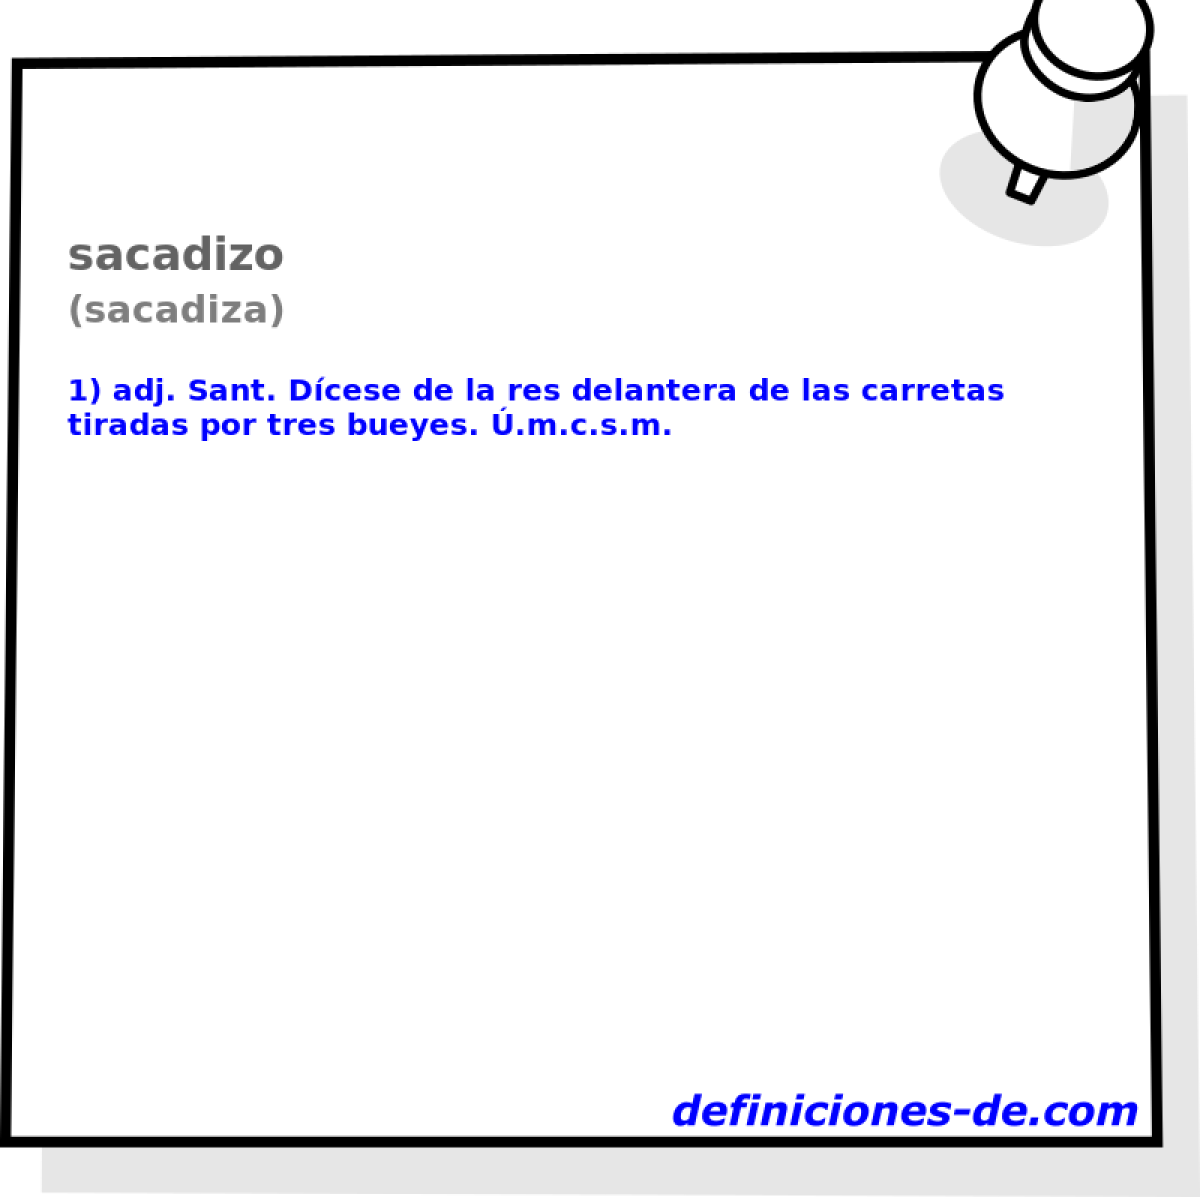 sacadizo (sacadiza)